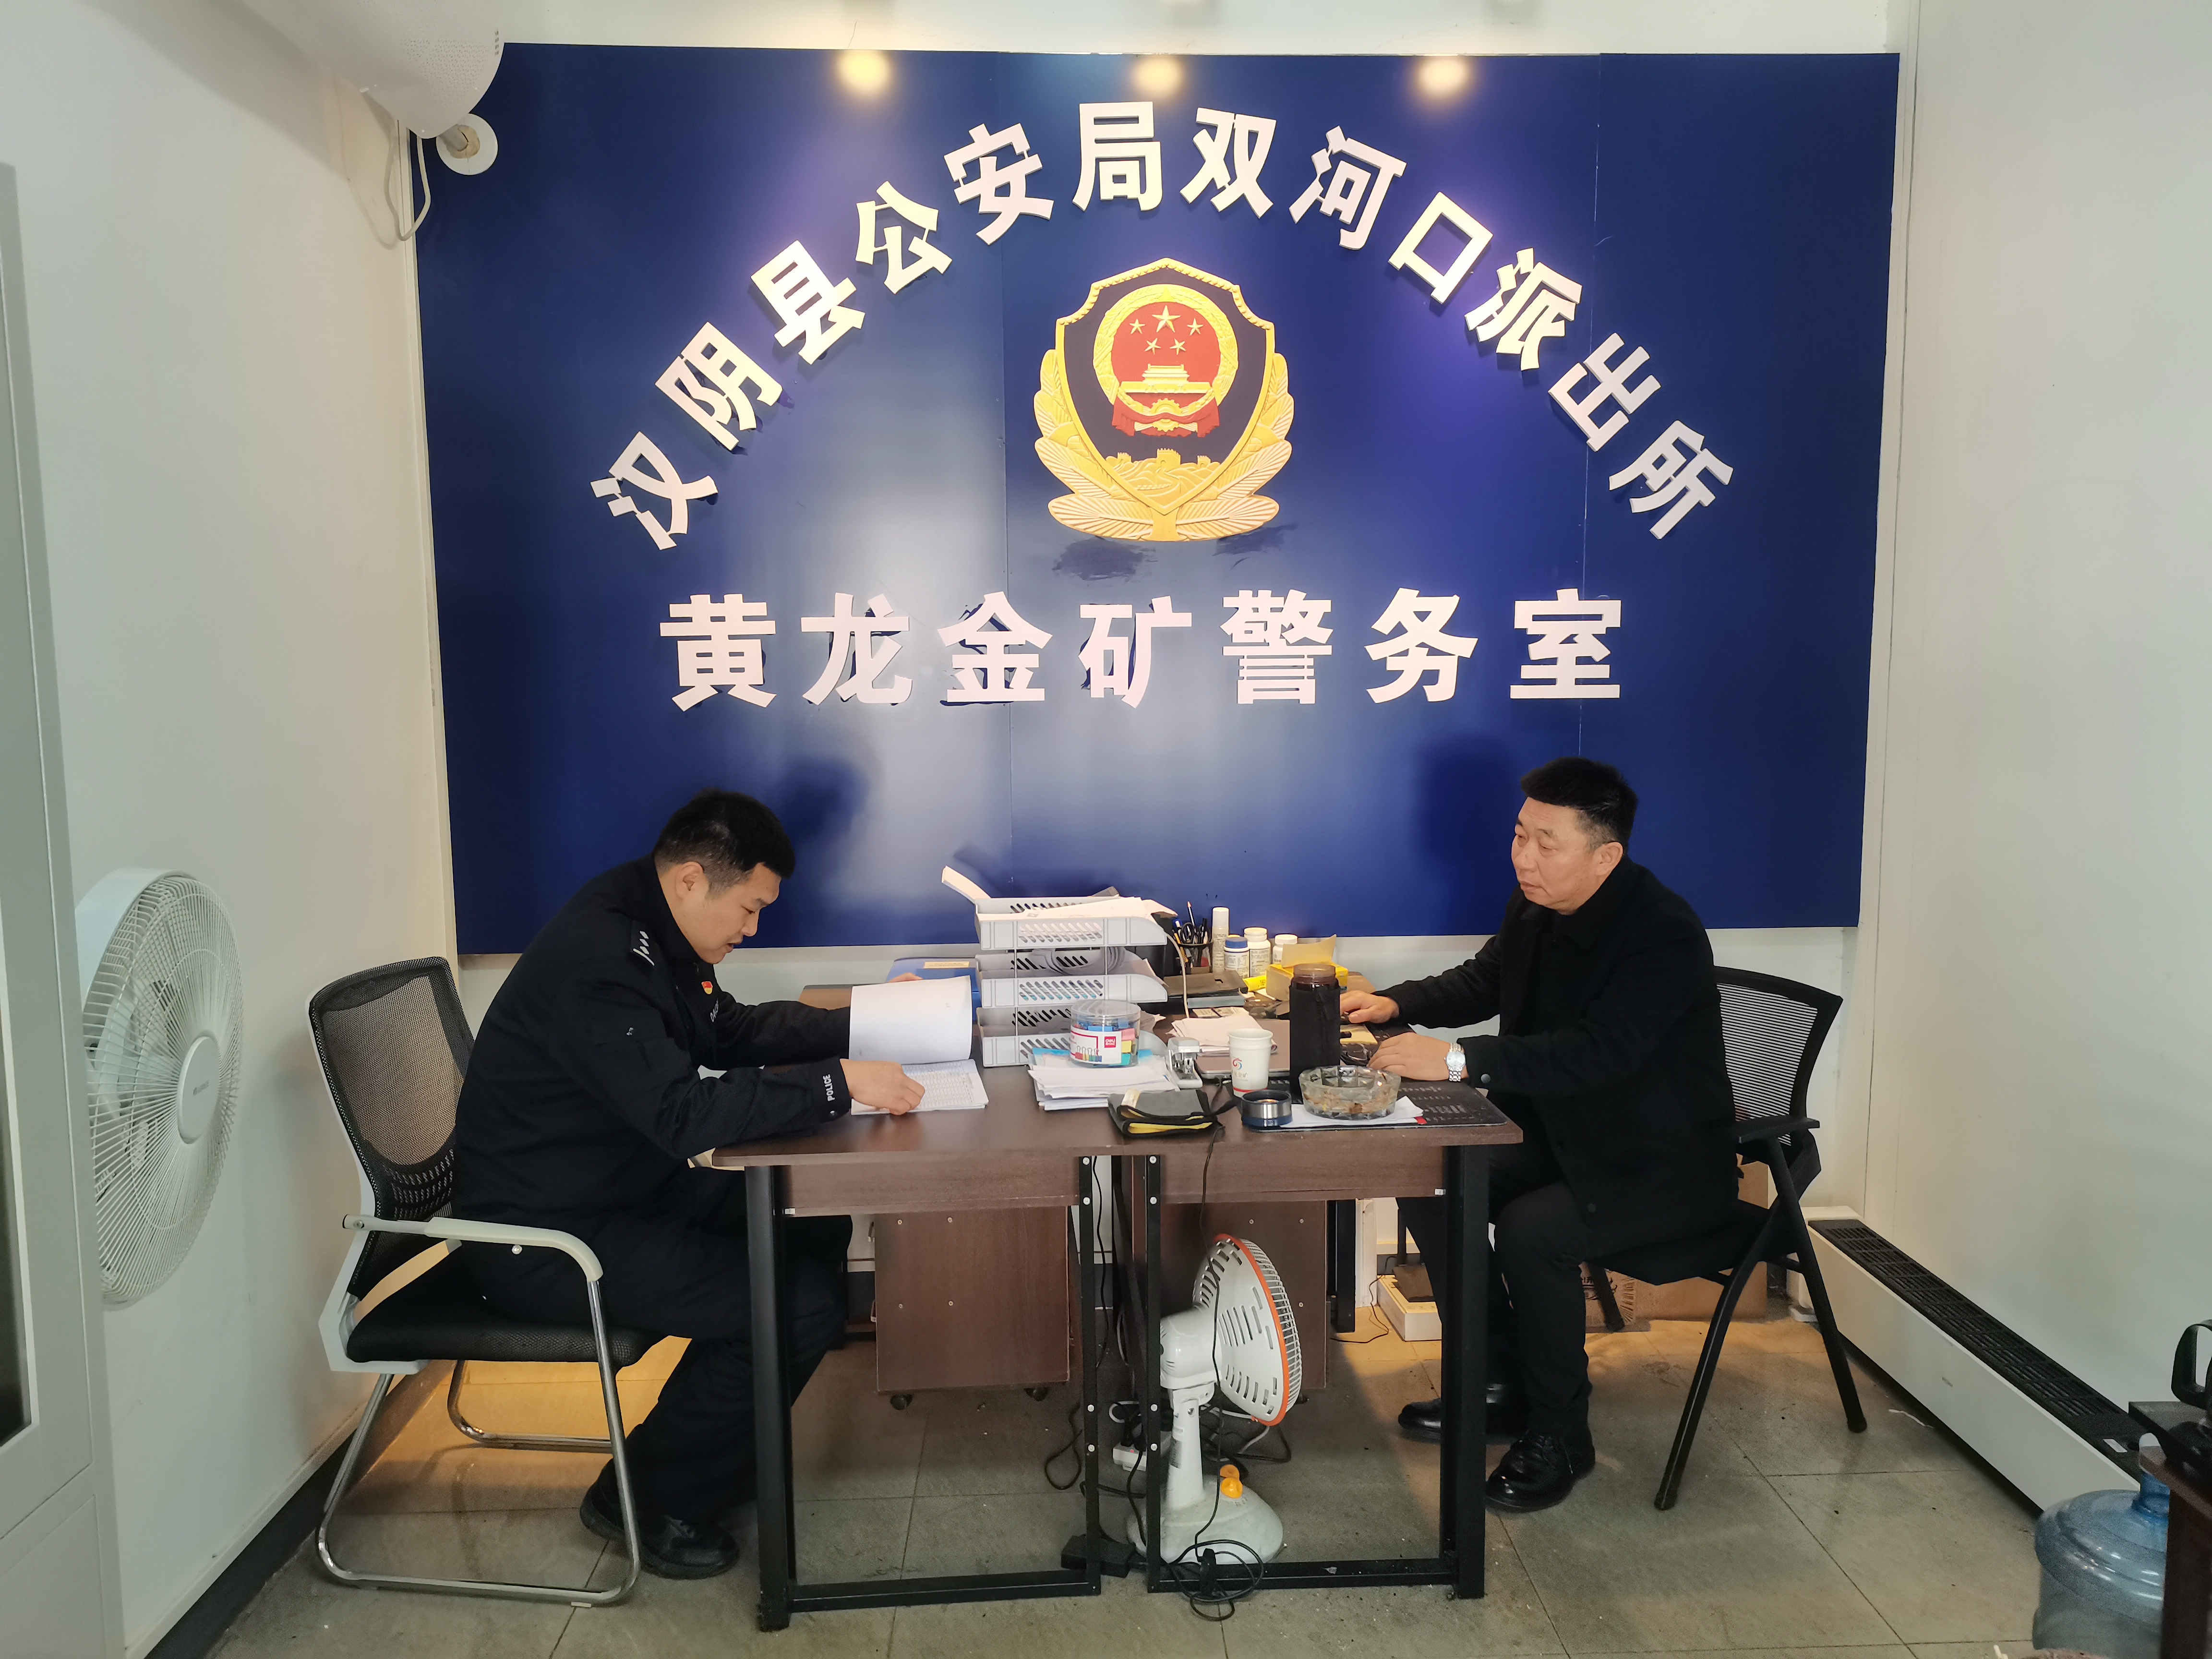 汉阴县公安局双河口派出所依托“警长制”护航企业发展